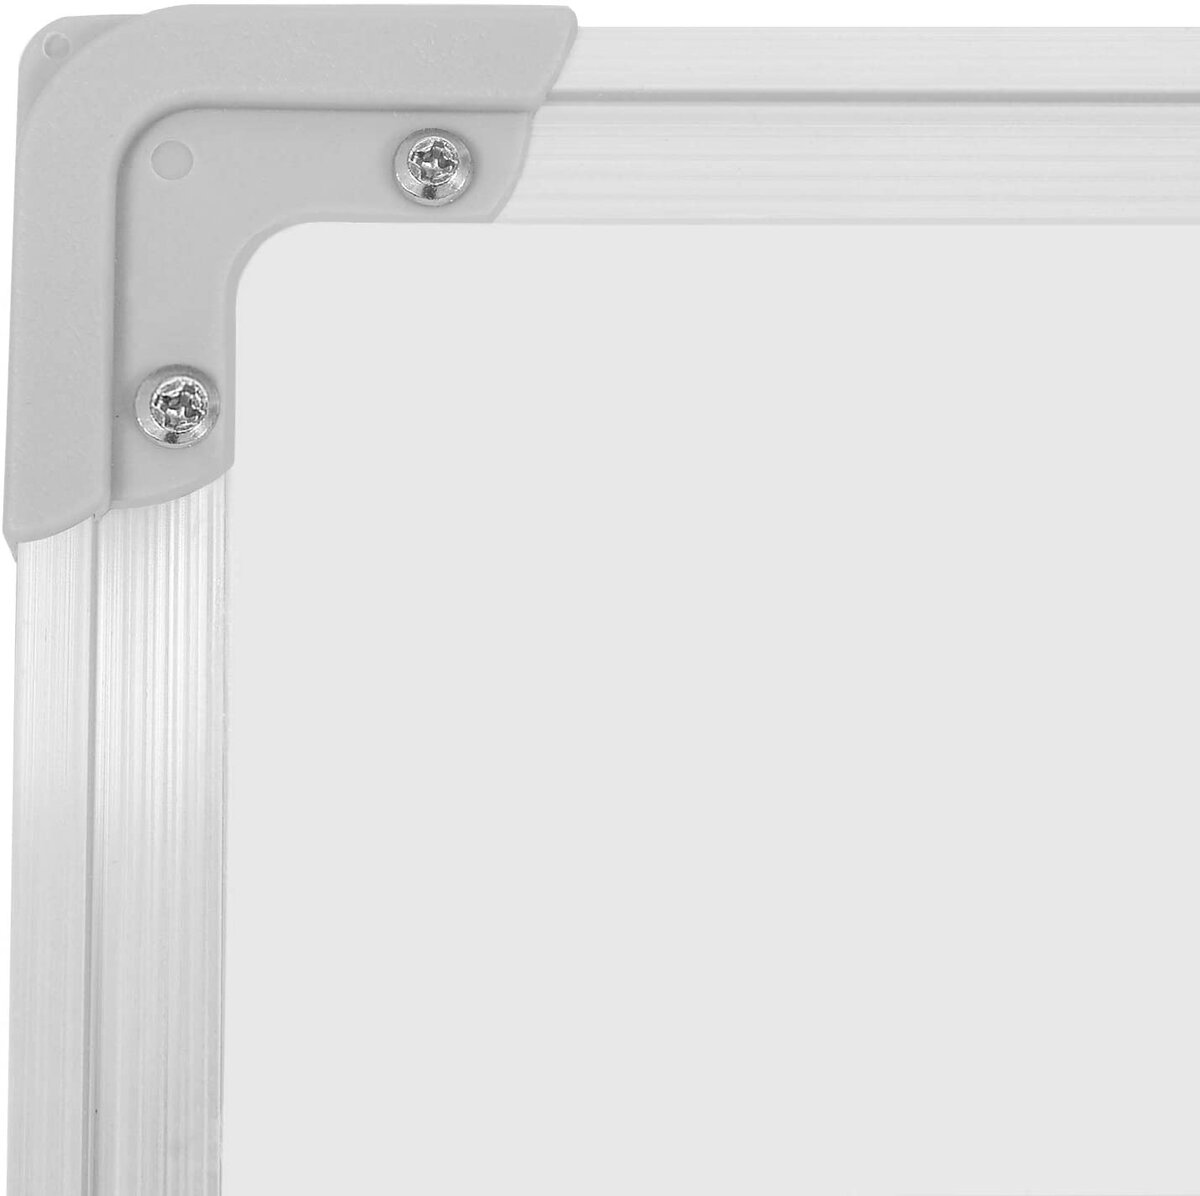 GIANTEX Tableau Magnétique Blanc avec Cadre en Aluminium, Tableau Blanc  Effaçable avec Plateau Porte-Stylos, Marqueurs